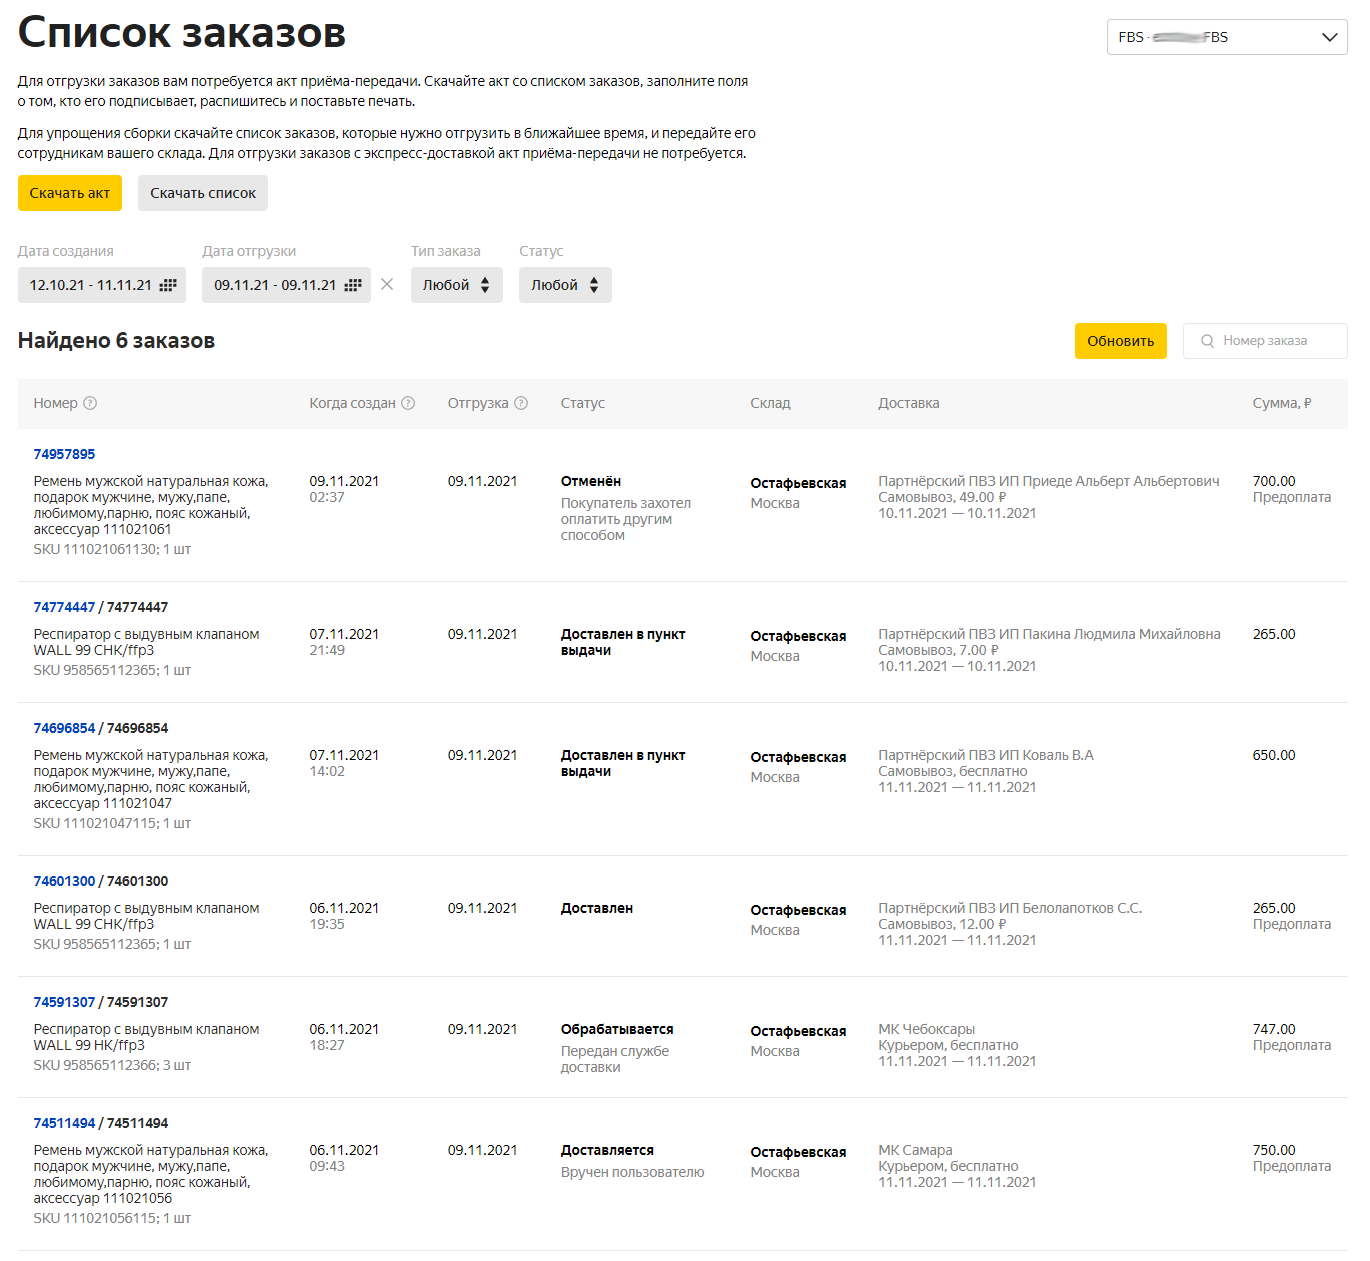 Заказы оформленные клиентами на одну дату отгрузки в ЛК продавца Яндекс.Маркета